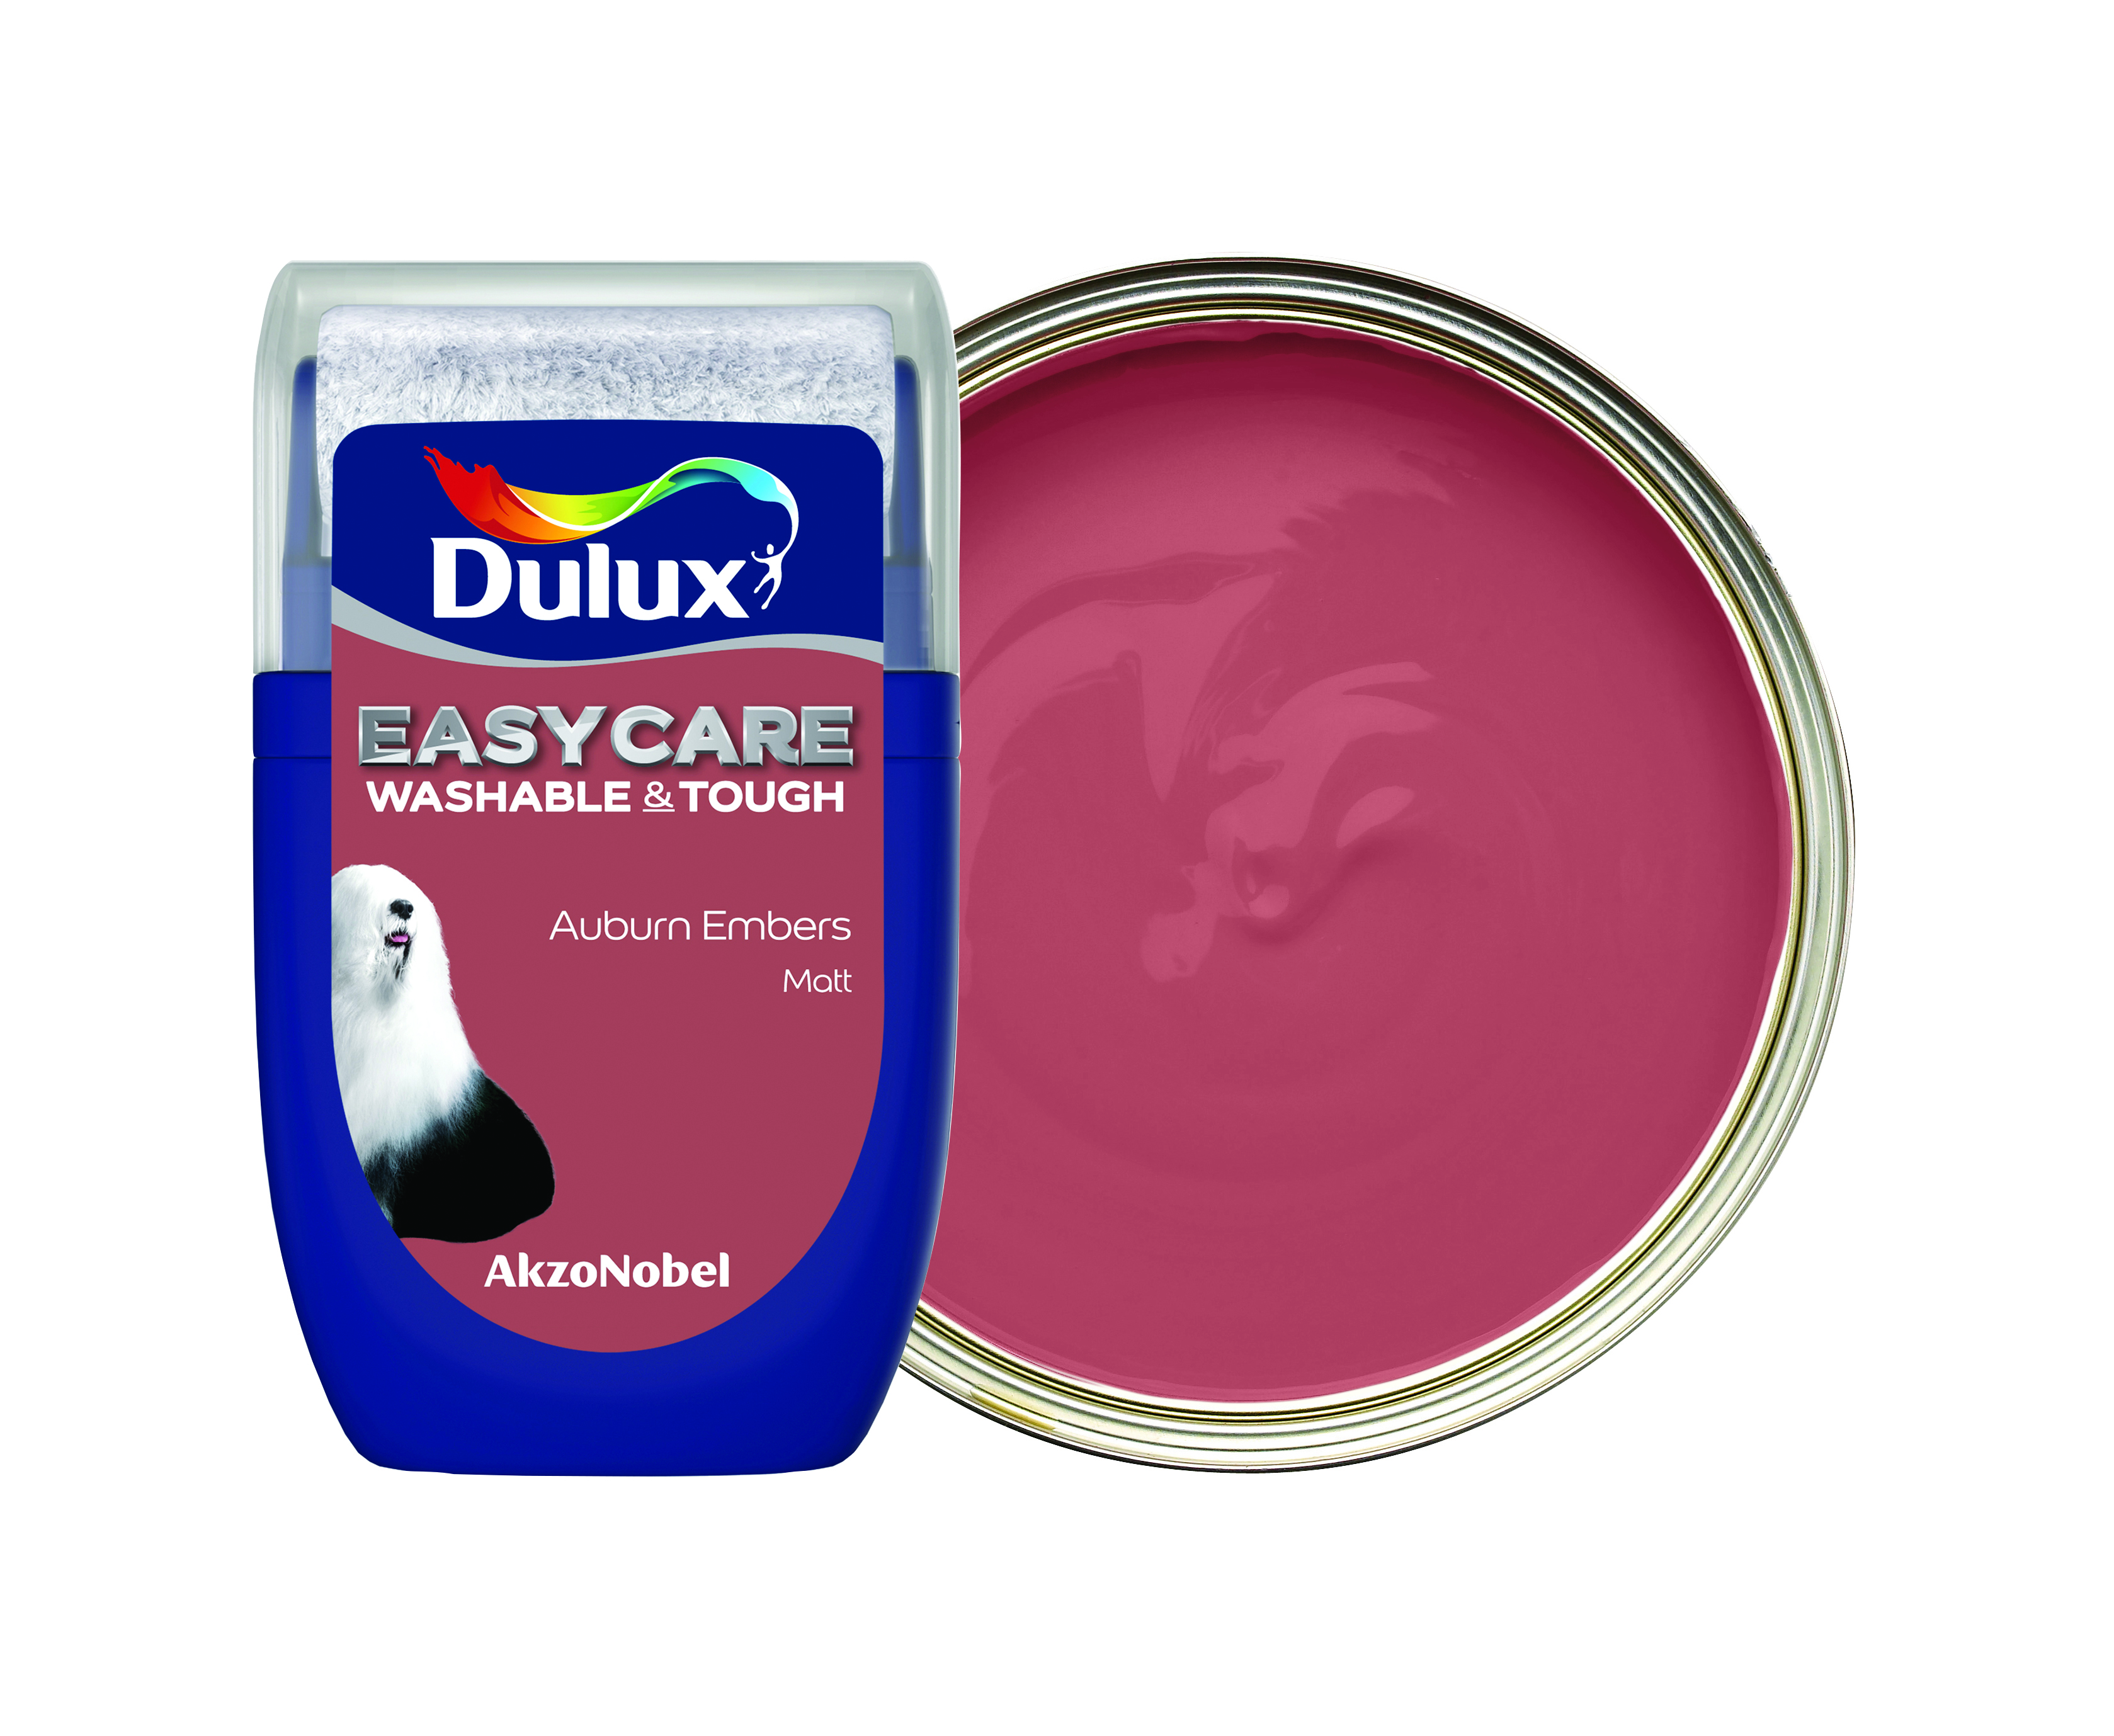 Dulux Easycare Washable & Tough Paint Tester Pot - Auburn Embers - 30ml